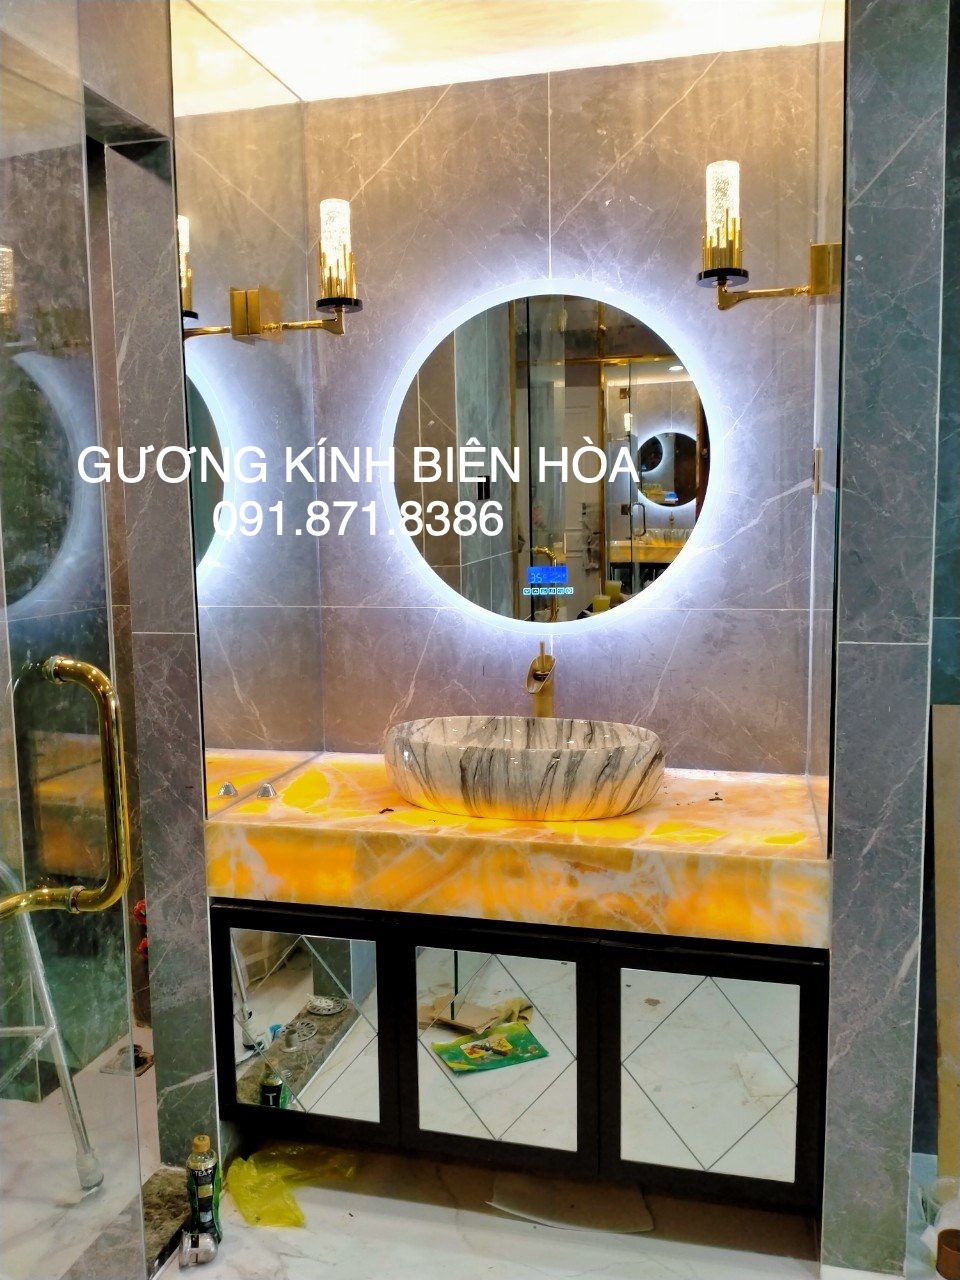 Gương đèn led treo phòng tắm Biên Hòa Đồng Nai